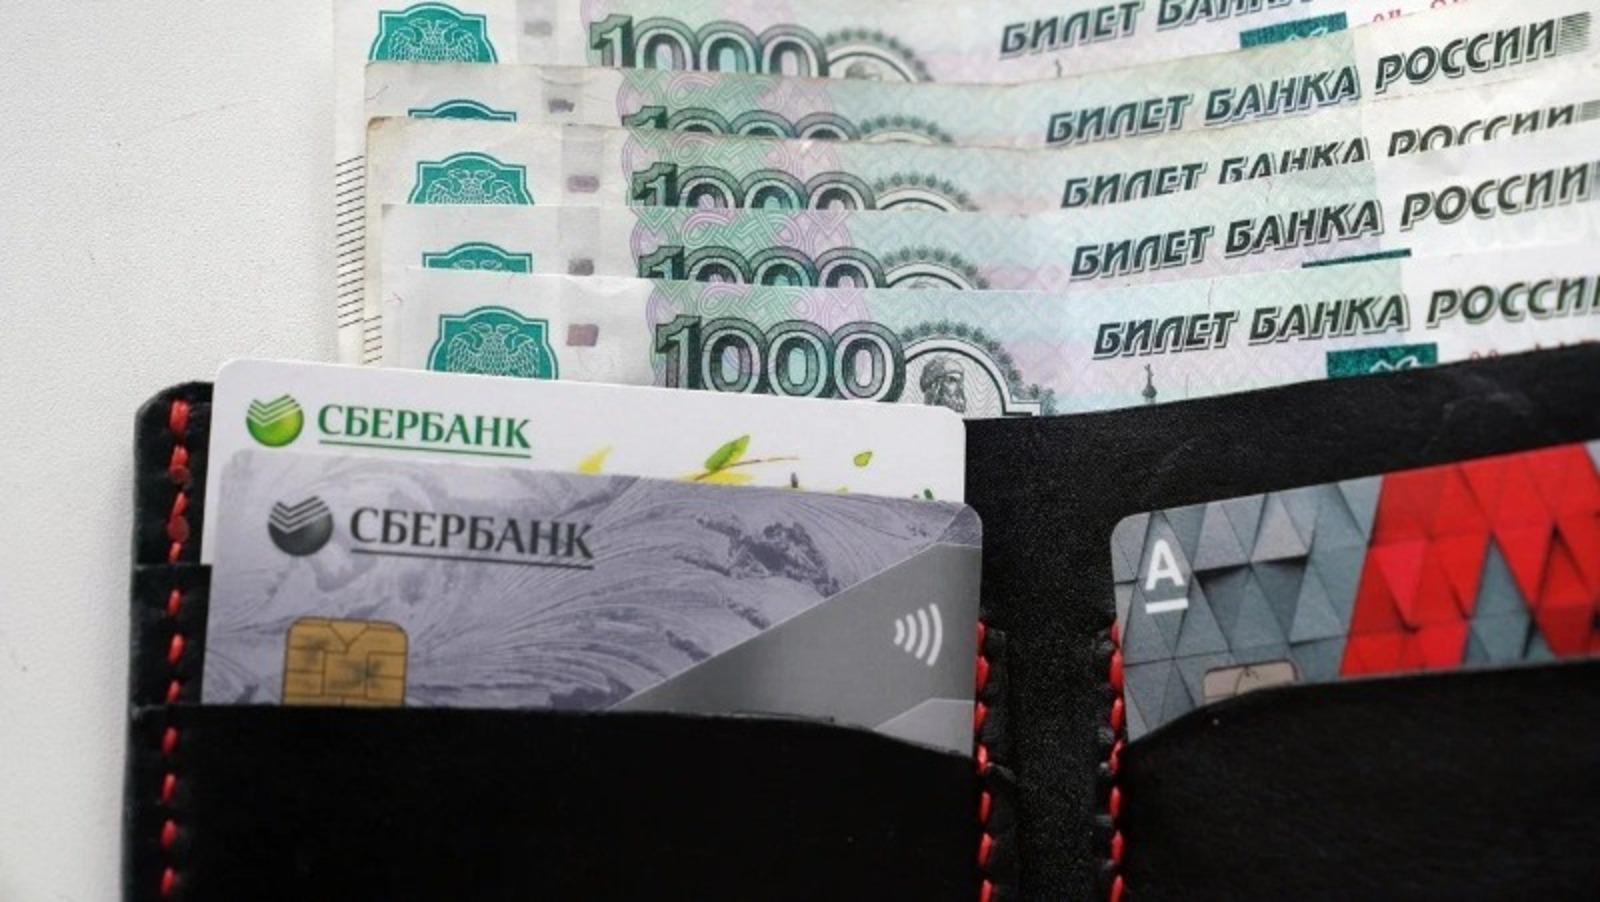 Экспортеры продукции АПК Башкортостана смогут получить льготные кредиты